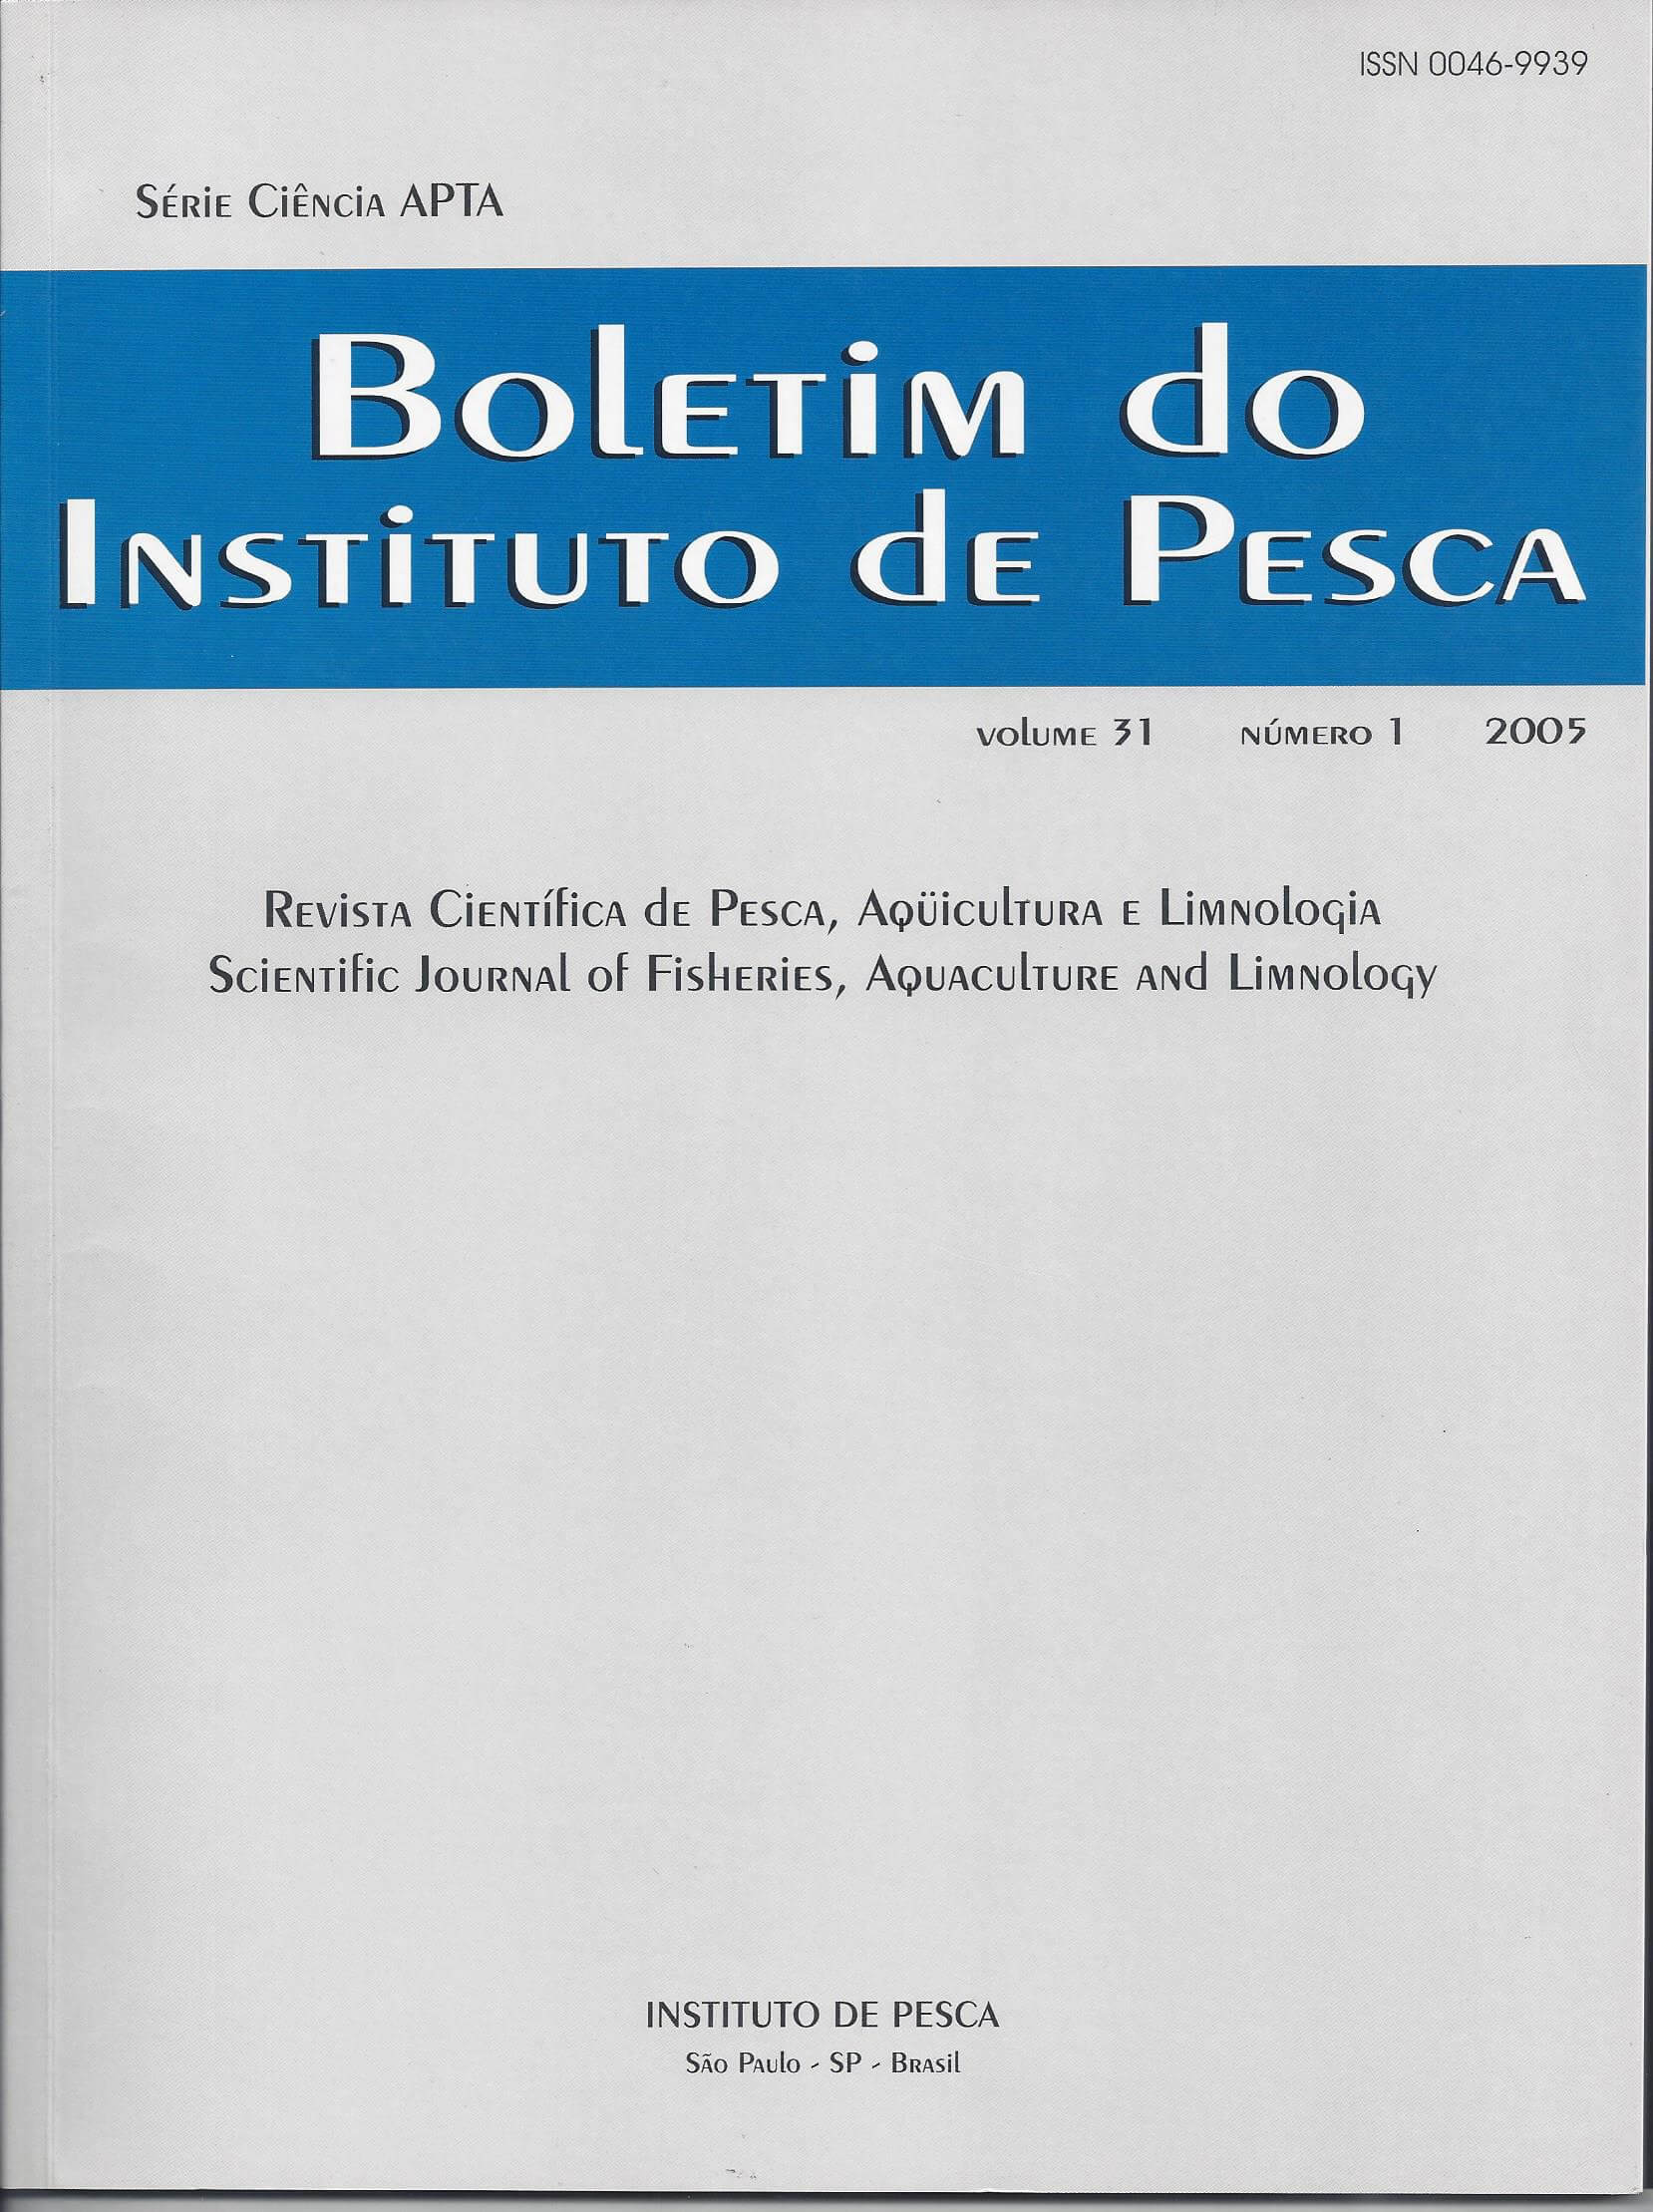 					Visualizar v. 31 n. 1 (2005): BOLETIM DO INSTITUTO DE PESCA
				